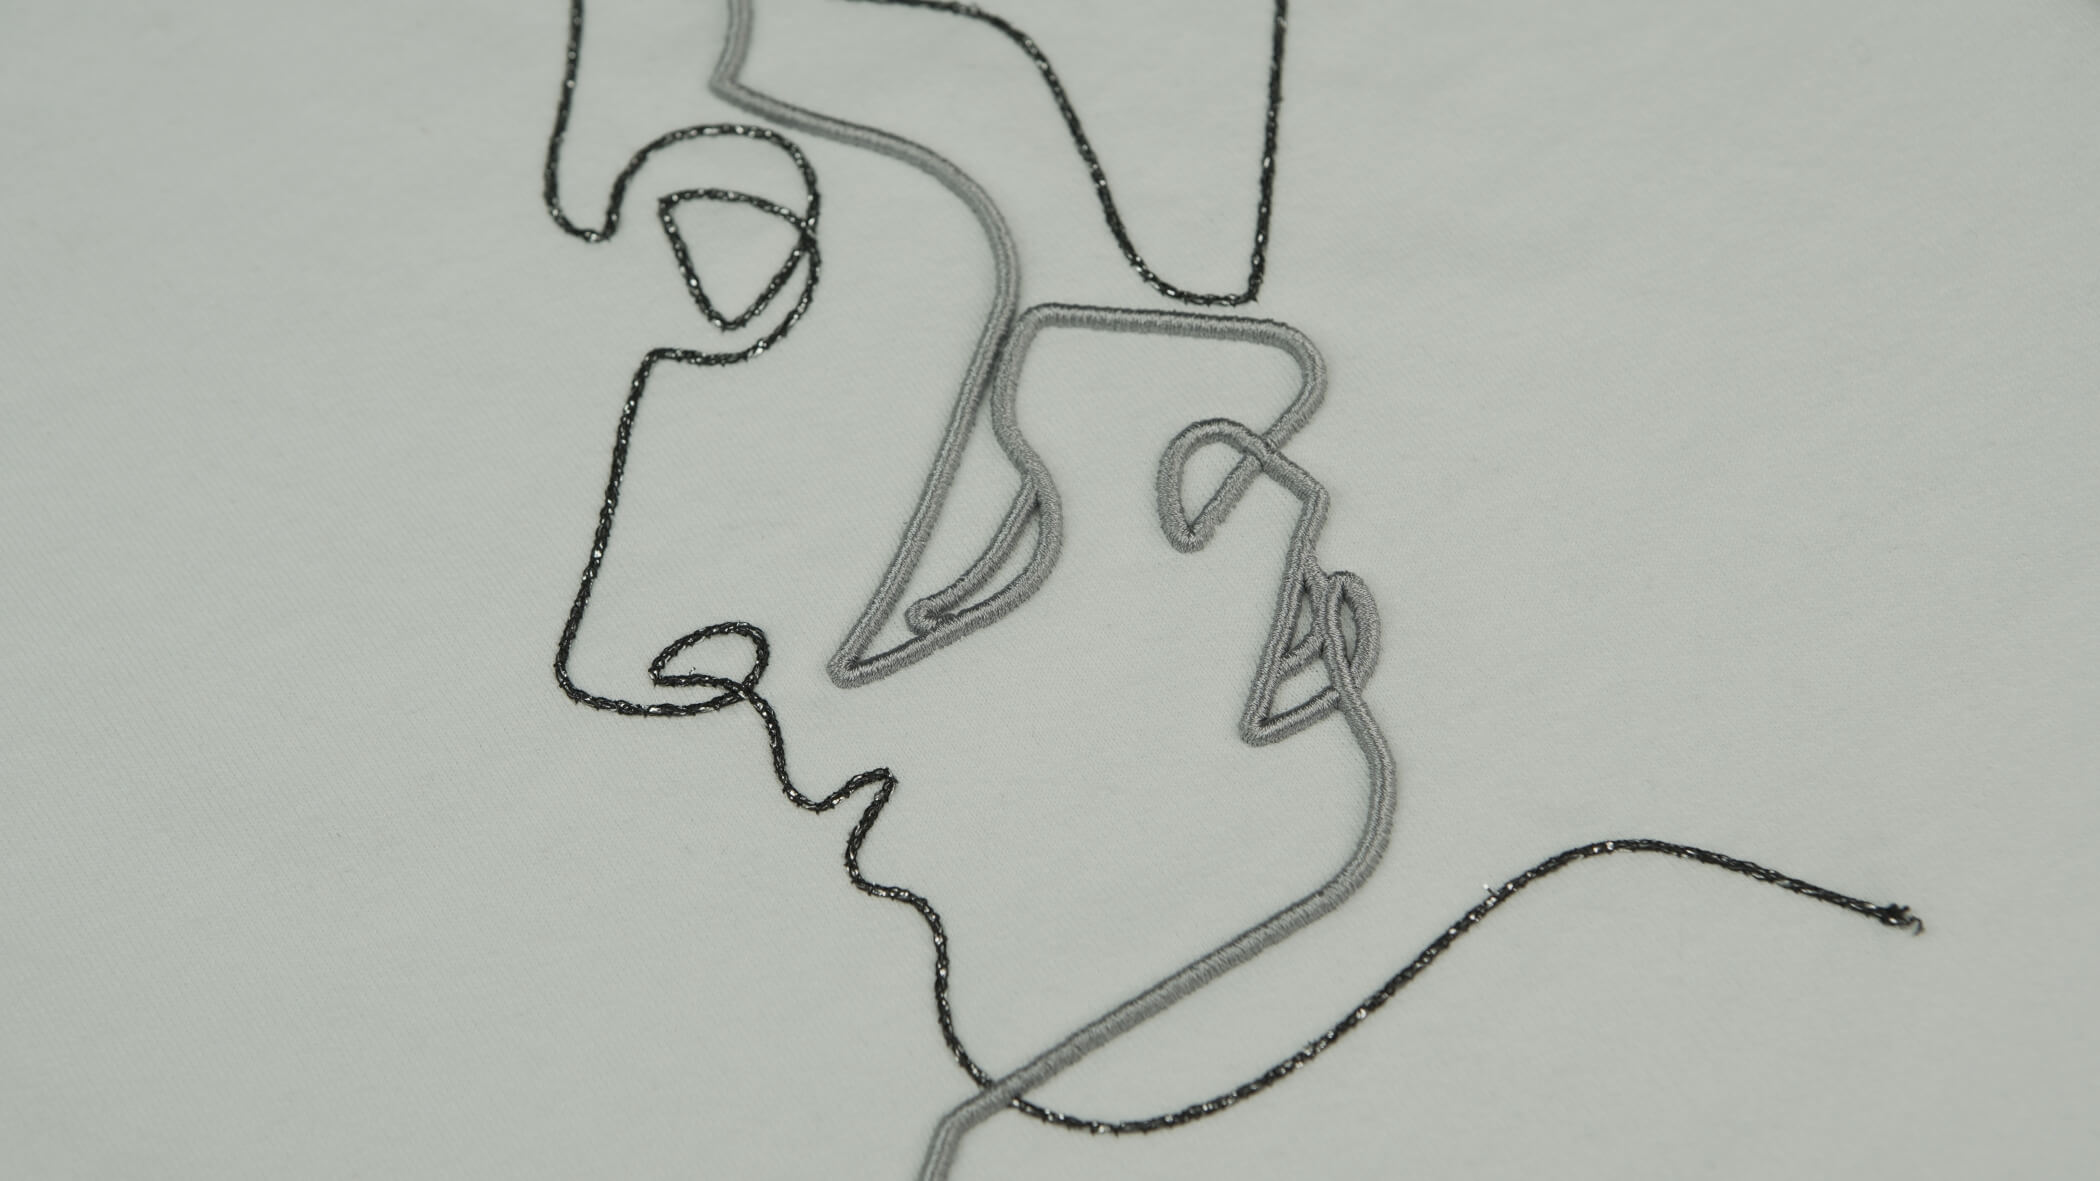 Dois rostos desenhados numa forma mais abstrata em cinzento e preto, com as técnicas de bordado com cordão e com correntes metálicas